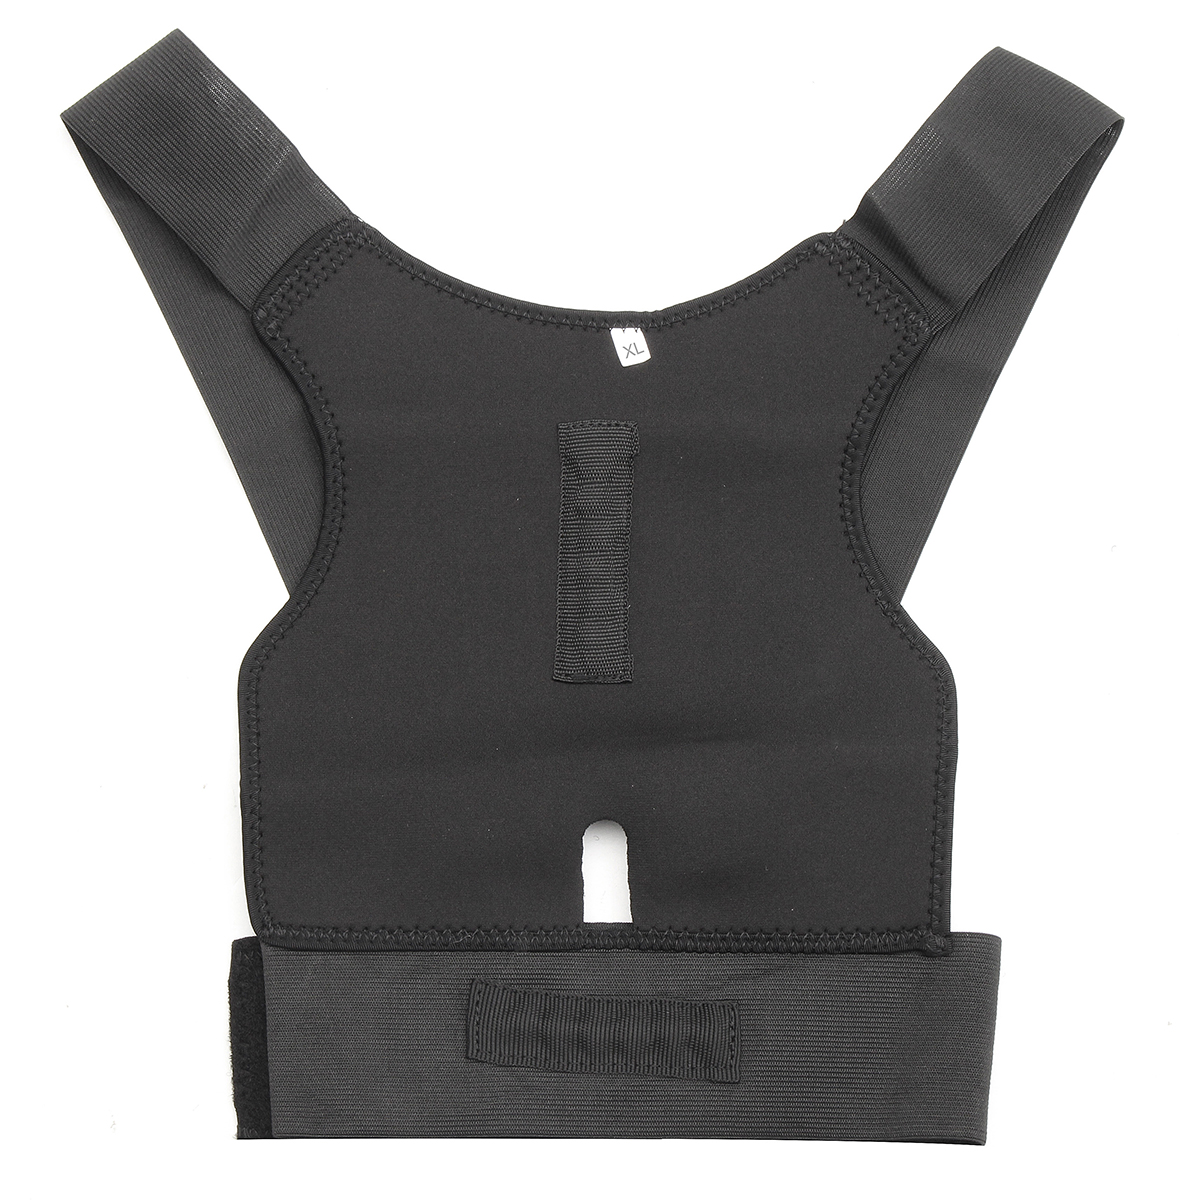 Adjustable-Back-Support-Posture-Corrector-Belt-Shoulder-Lumbar-Brace-1114689